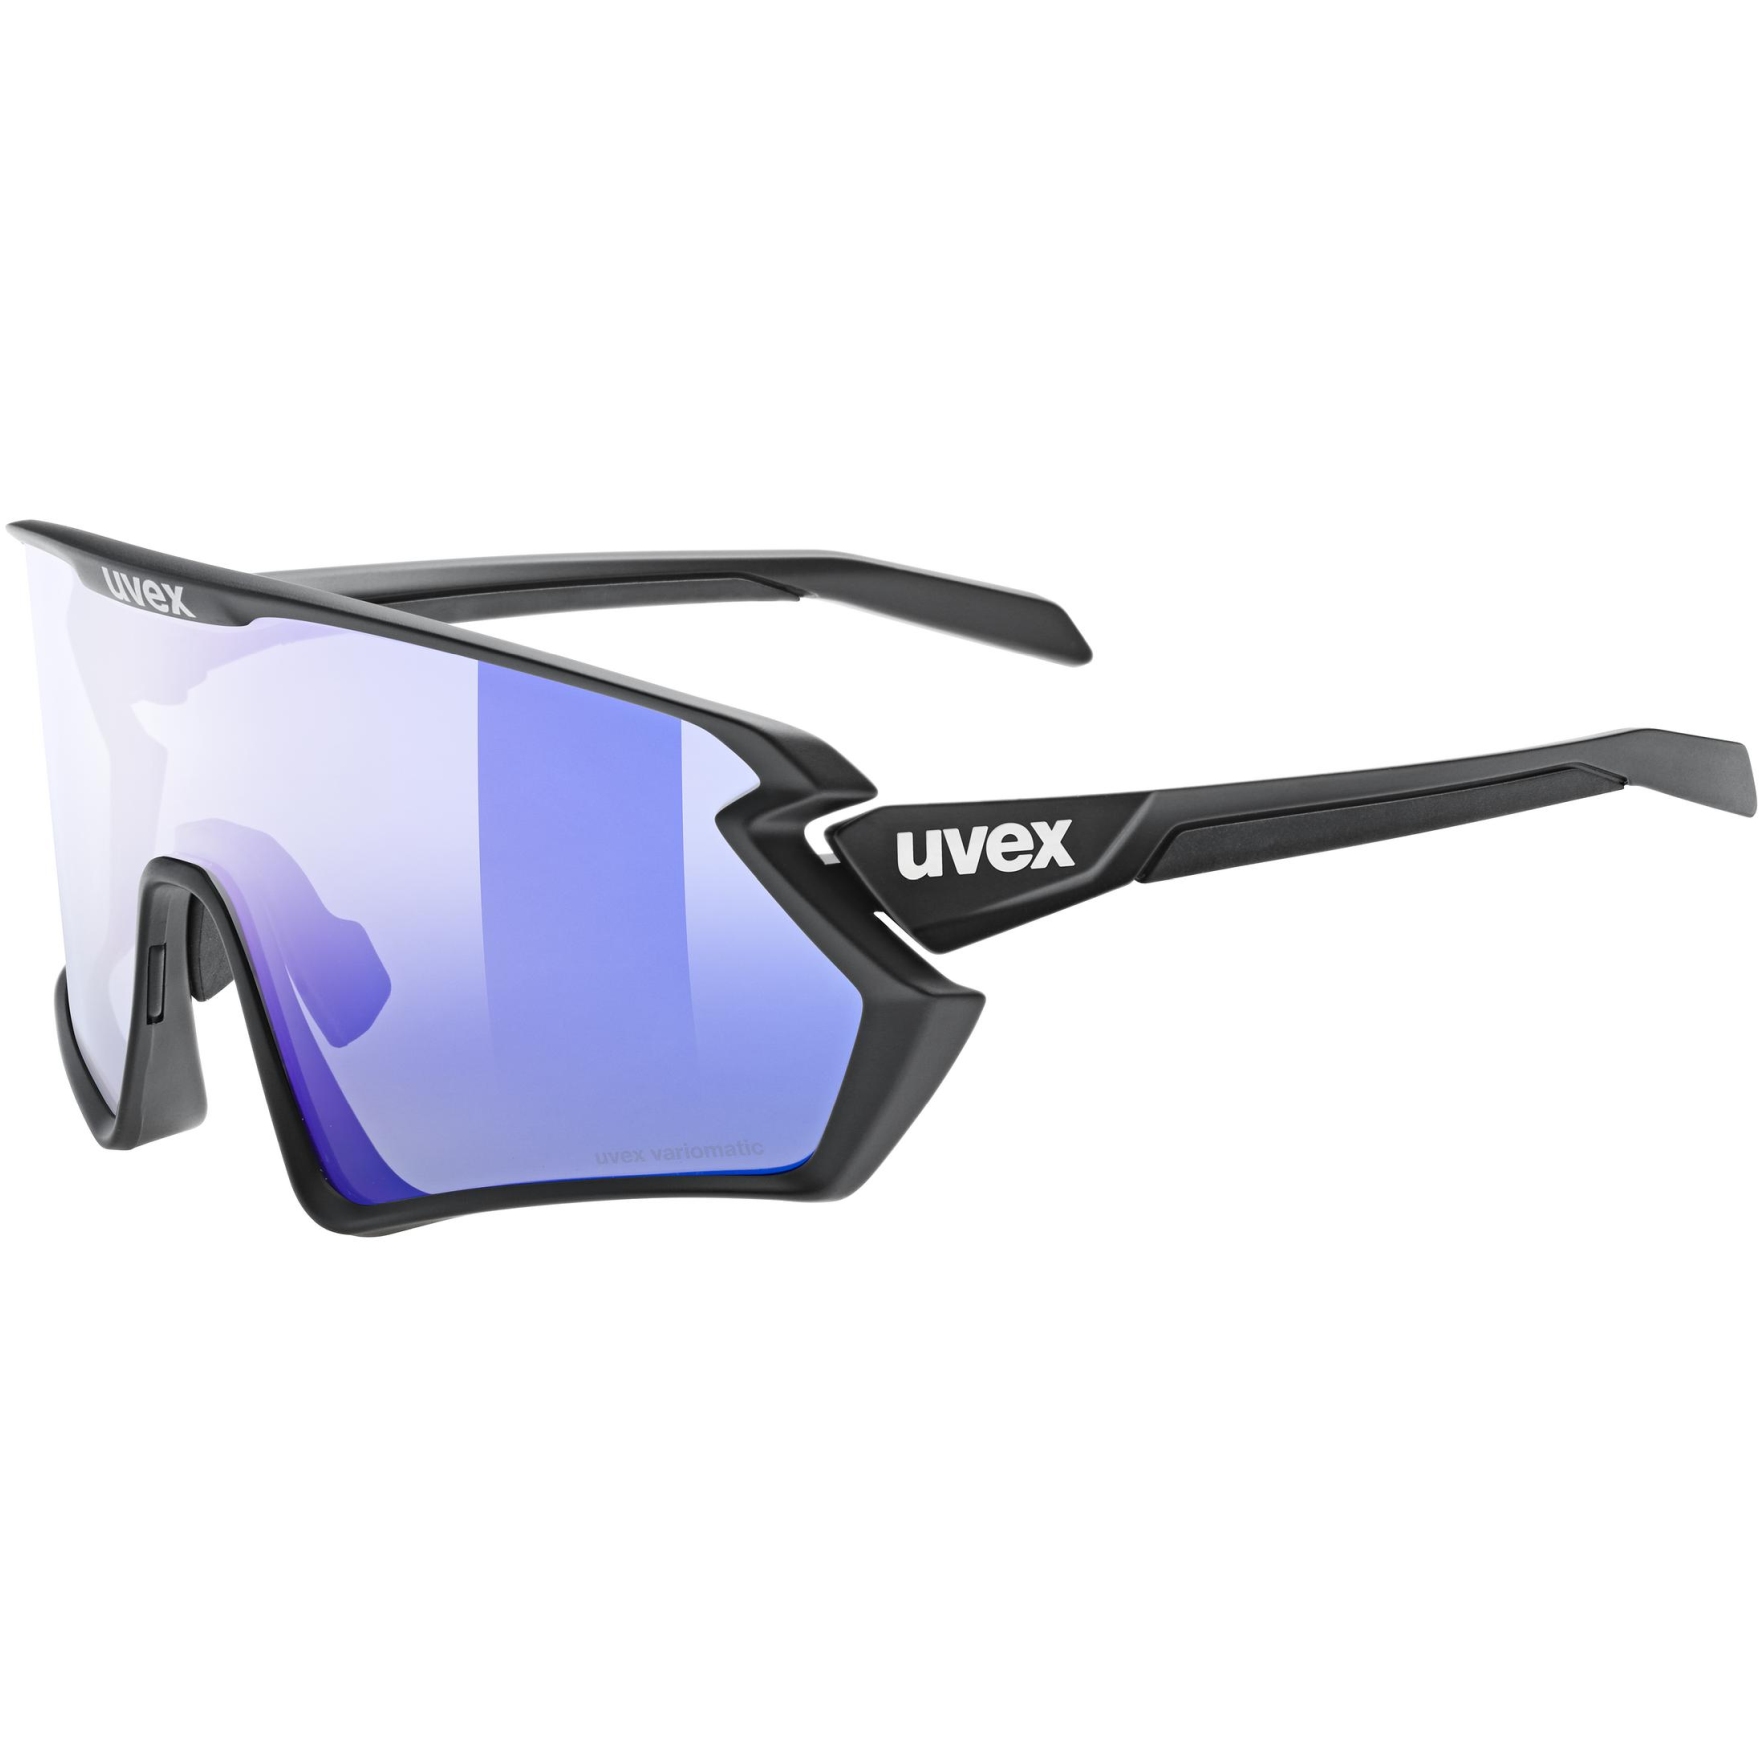 Produktbild von Uvex sportstyle 231 2.0 V Brille - black matt/variomatic litemirror blue